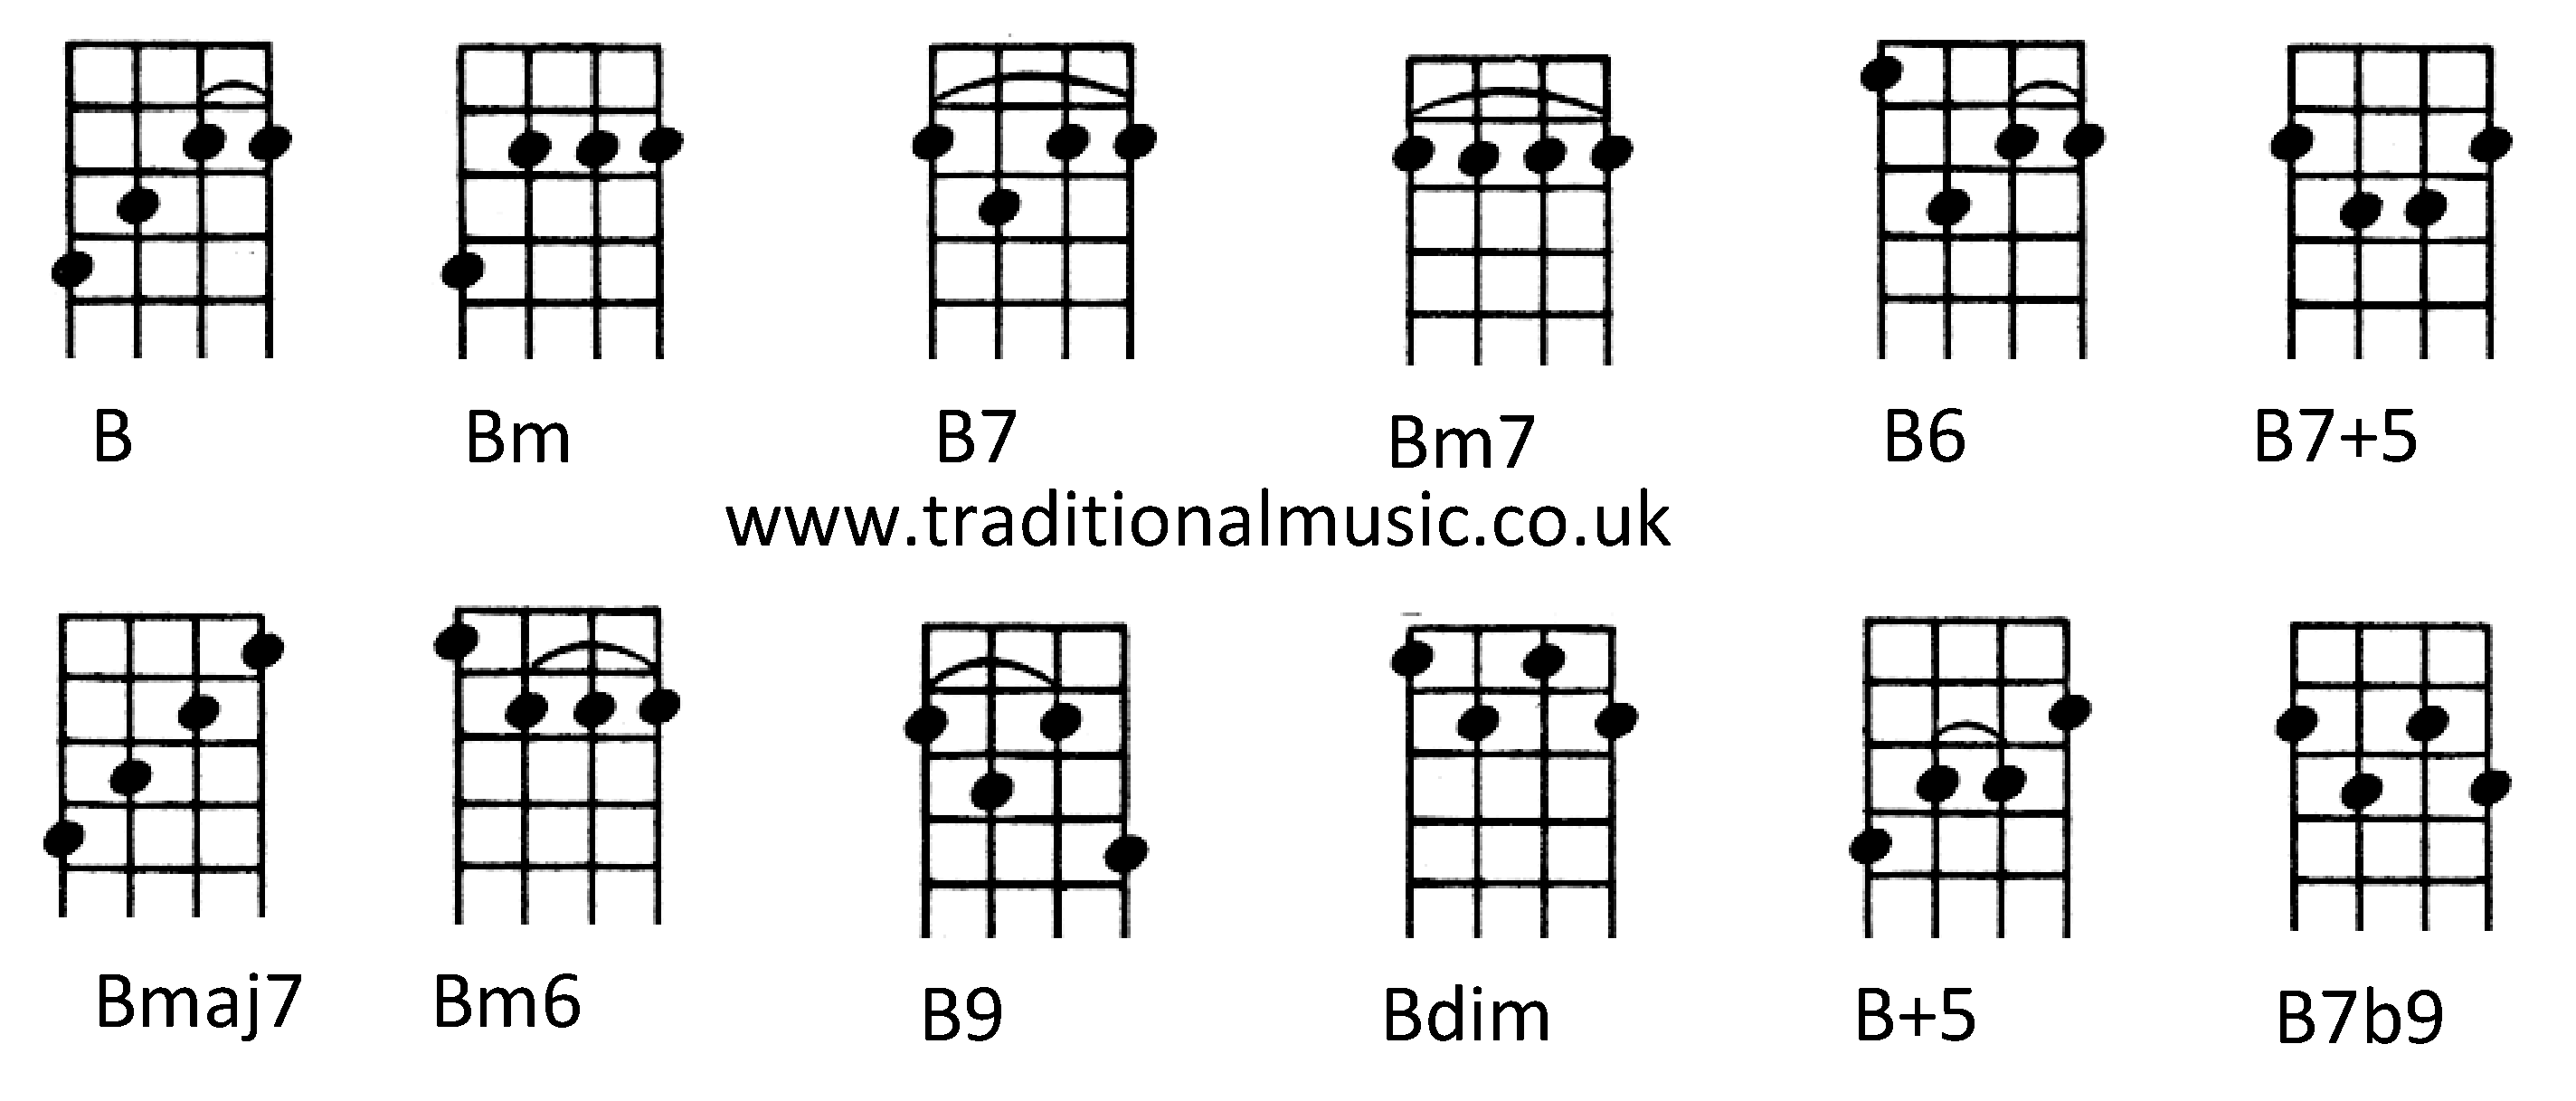 Chords for Ukulele (C tuning) B Bm B7 Bm7 B7+5 Bmaj7 Bm6 B9 B6 Bdim B+5 B7b9